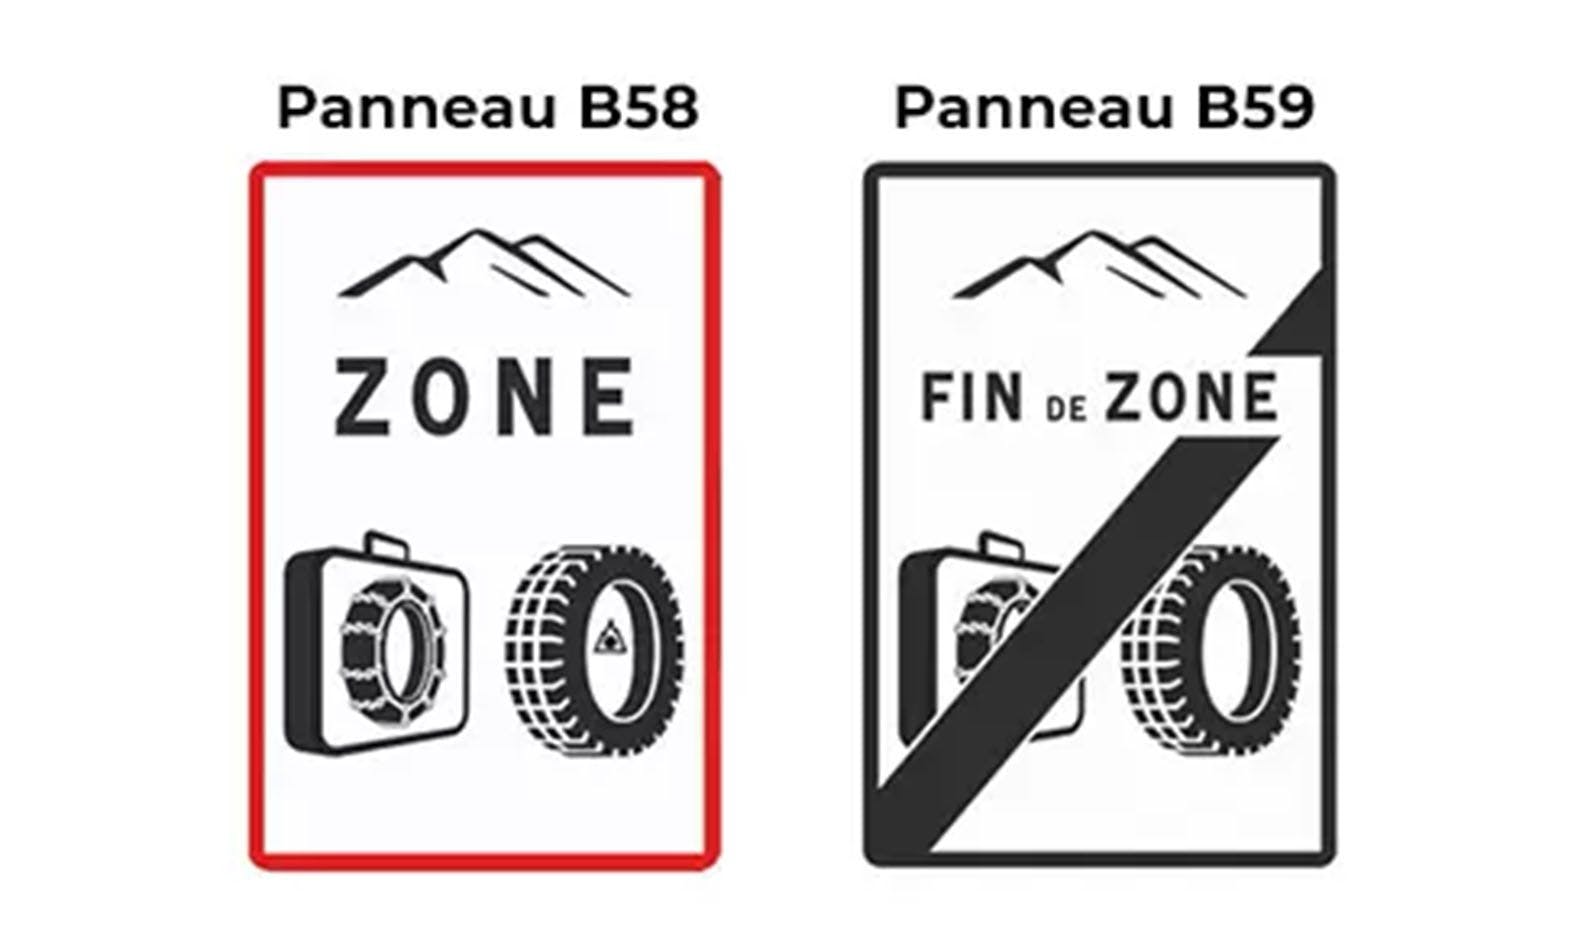 Panneaux B58 et B59 qui indiquent l'entrée et la sortie d'une zone réglementée. 